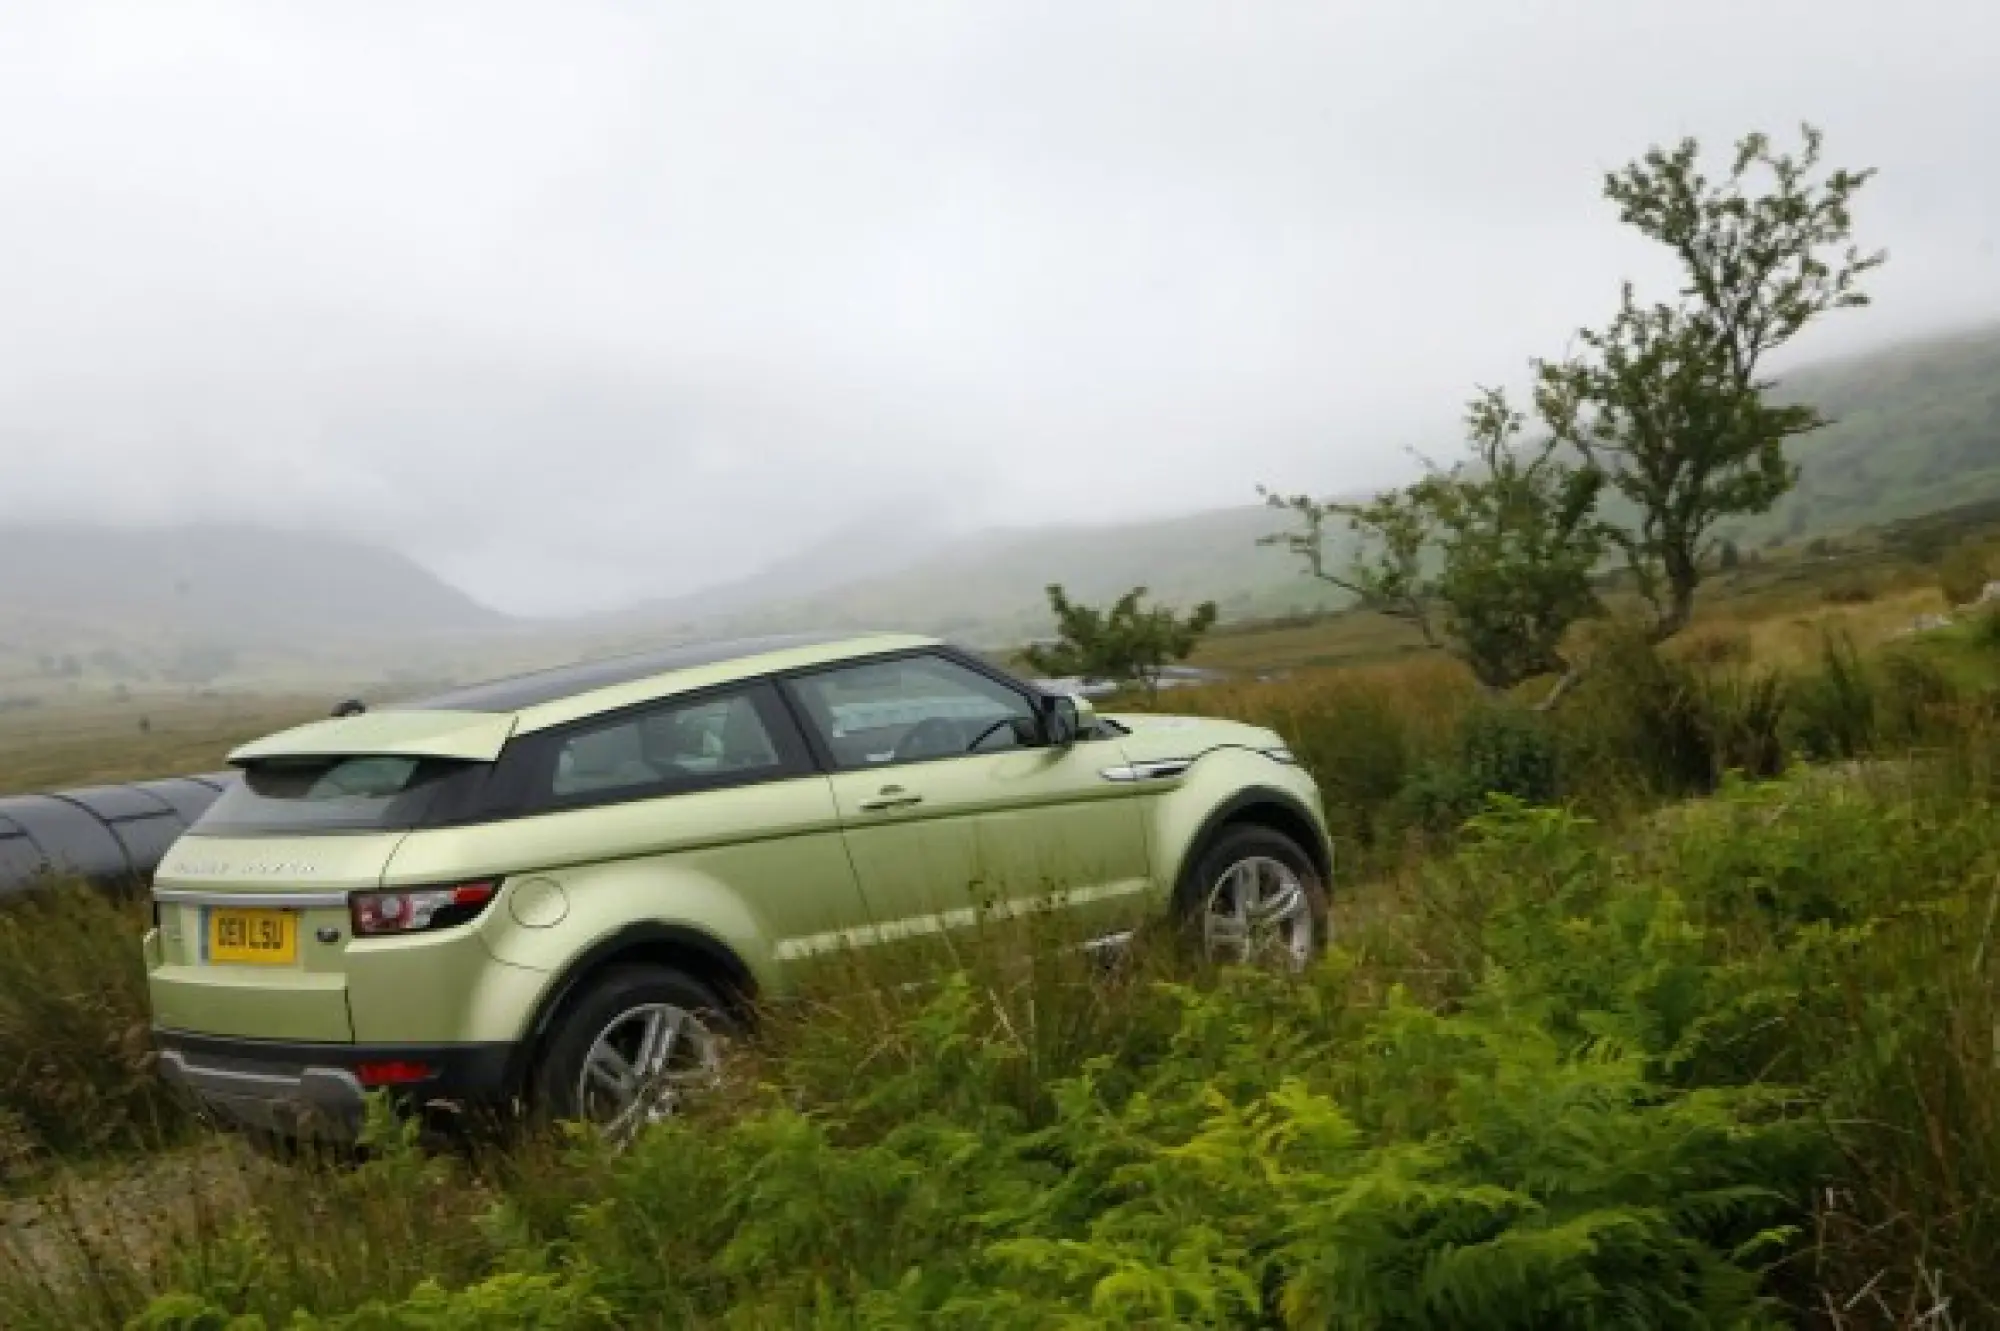 Land Rover Range Rover Evoque nuove foto ufficiali - 130